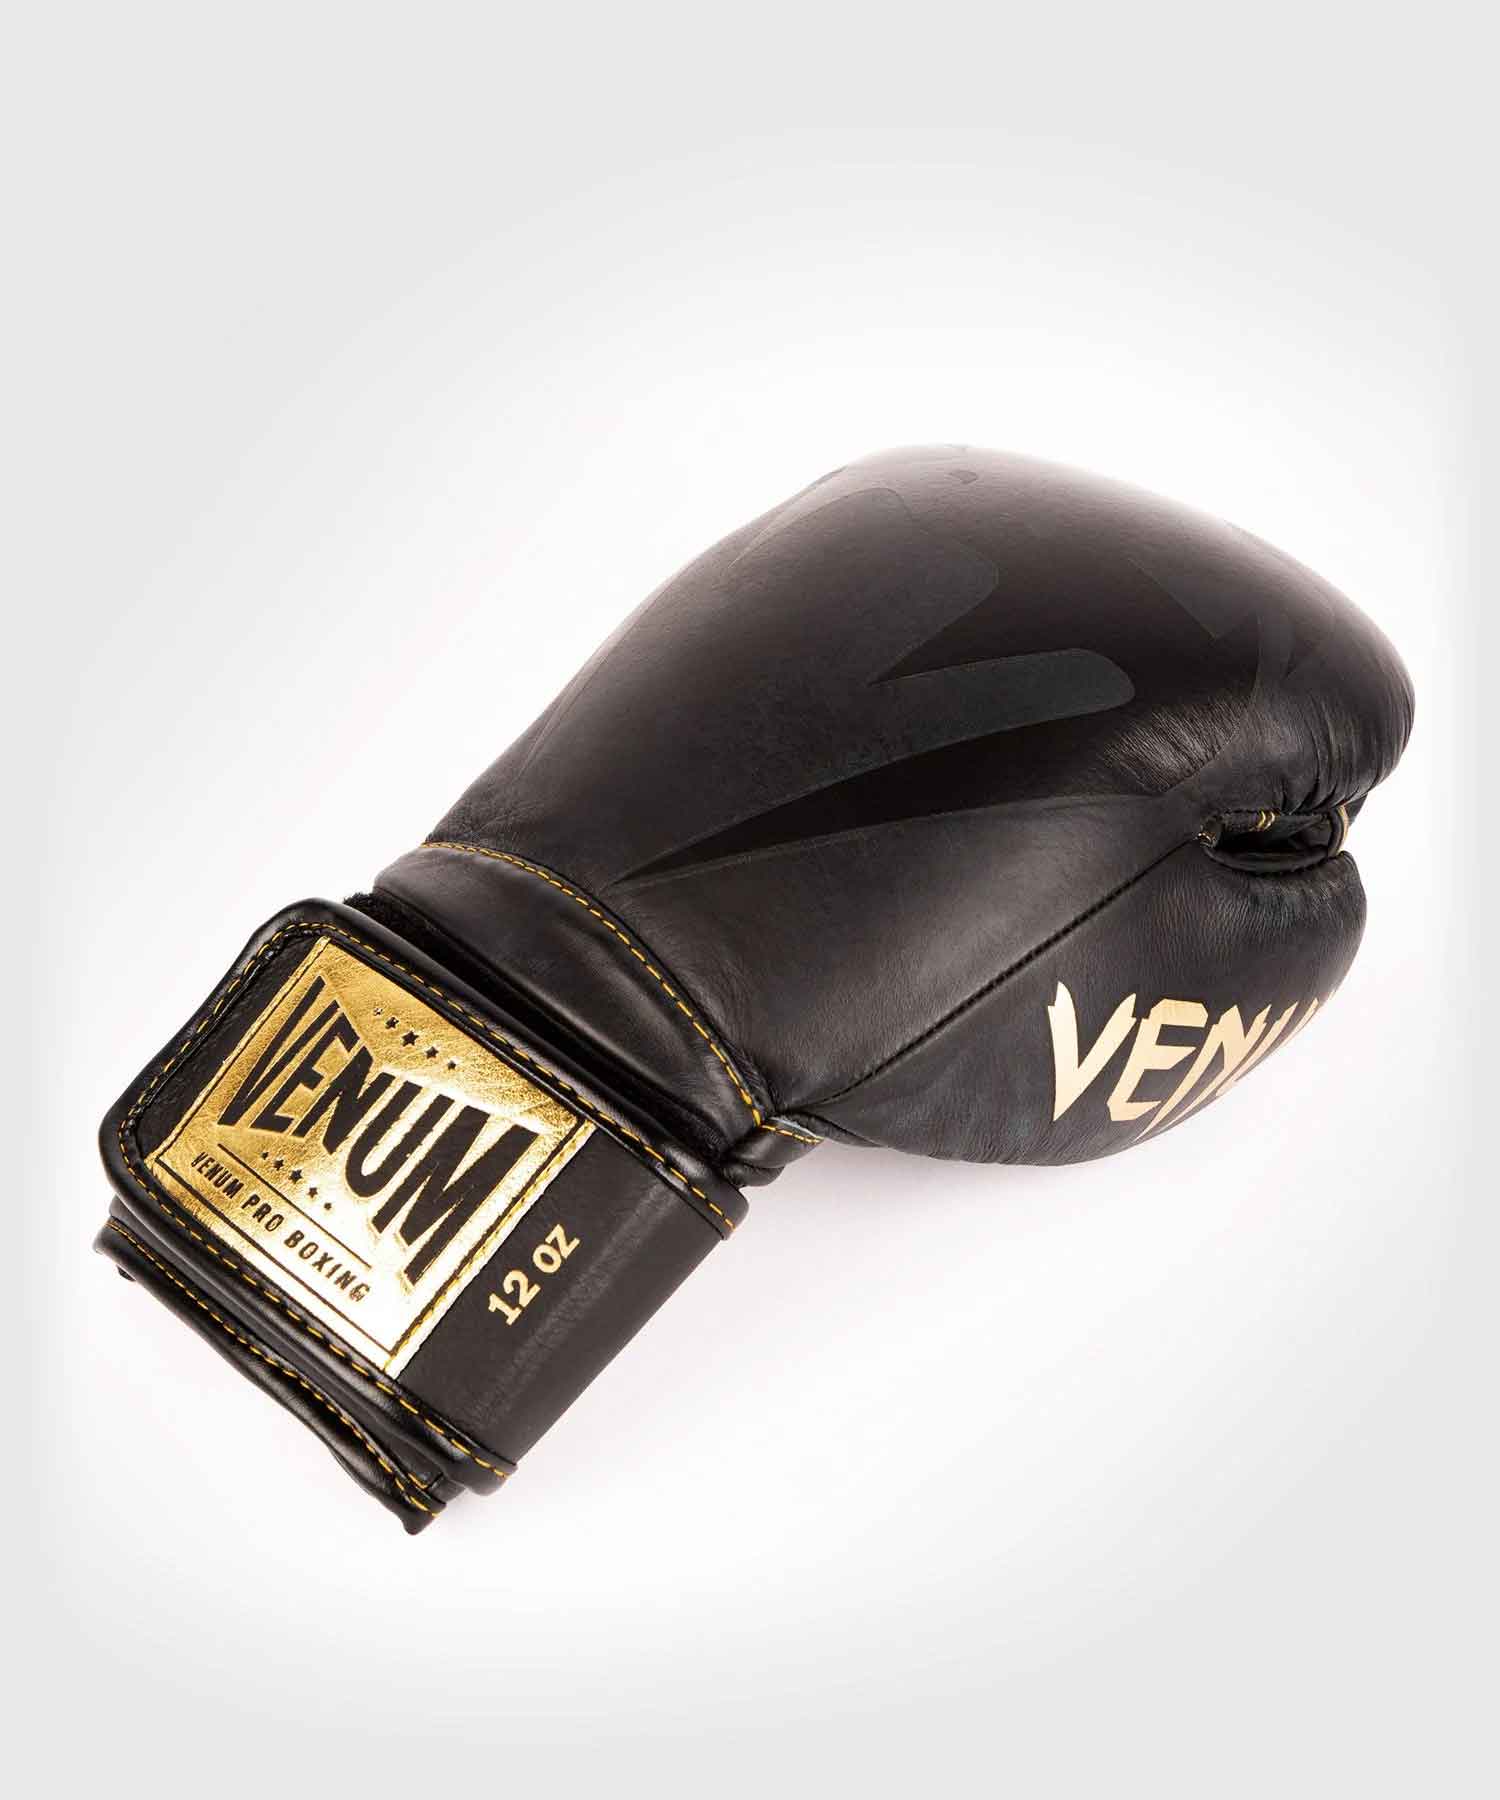 VENUM／ヴェナム　ボクシンググローブ　　GIANT 2.0 PRO BOXING GLOVES VELCRO／ジャイアント2.0 プロボクシンググローブ ベルクロ（マットブラック／ゴールド）